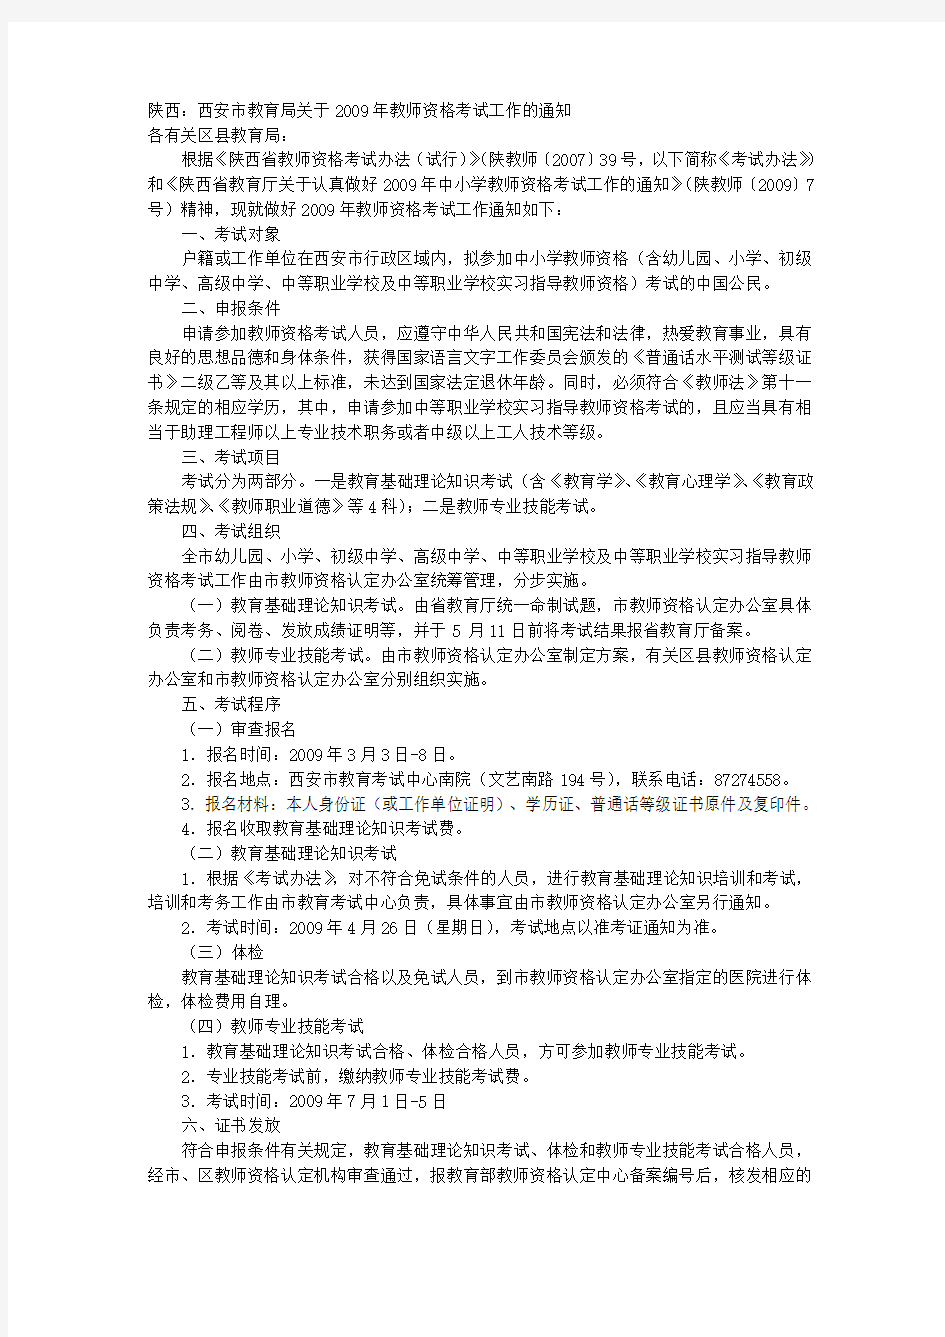 陕西：西安市教育局关于教师资格考试工作的通知 